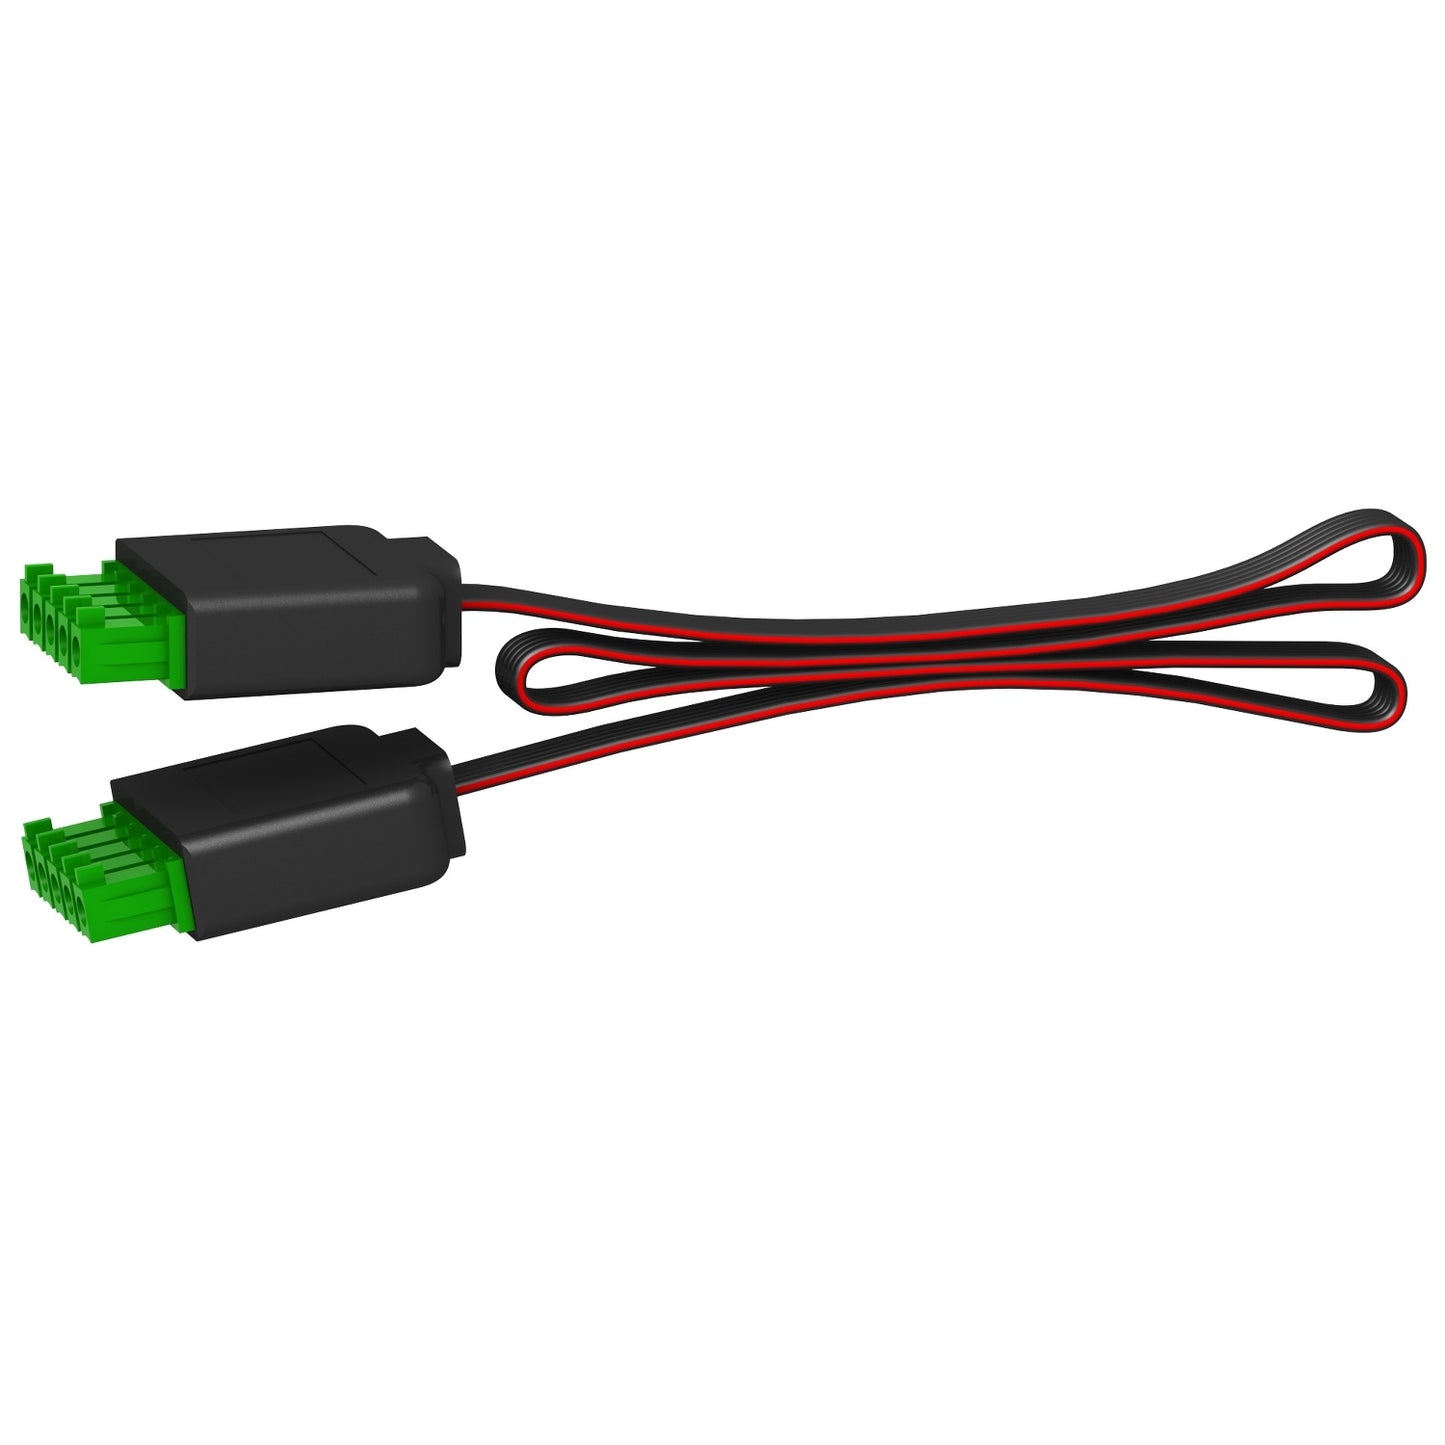 Cables prefabricados con 2 conectores Acti9 Smartlink A9XCAM06 - SCHNEIDER